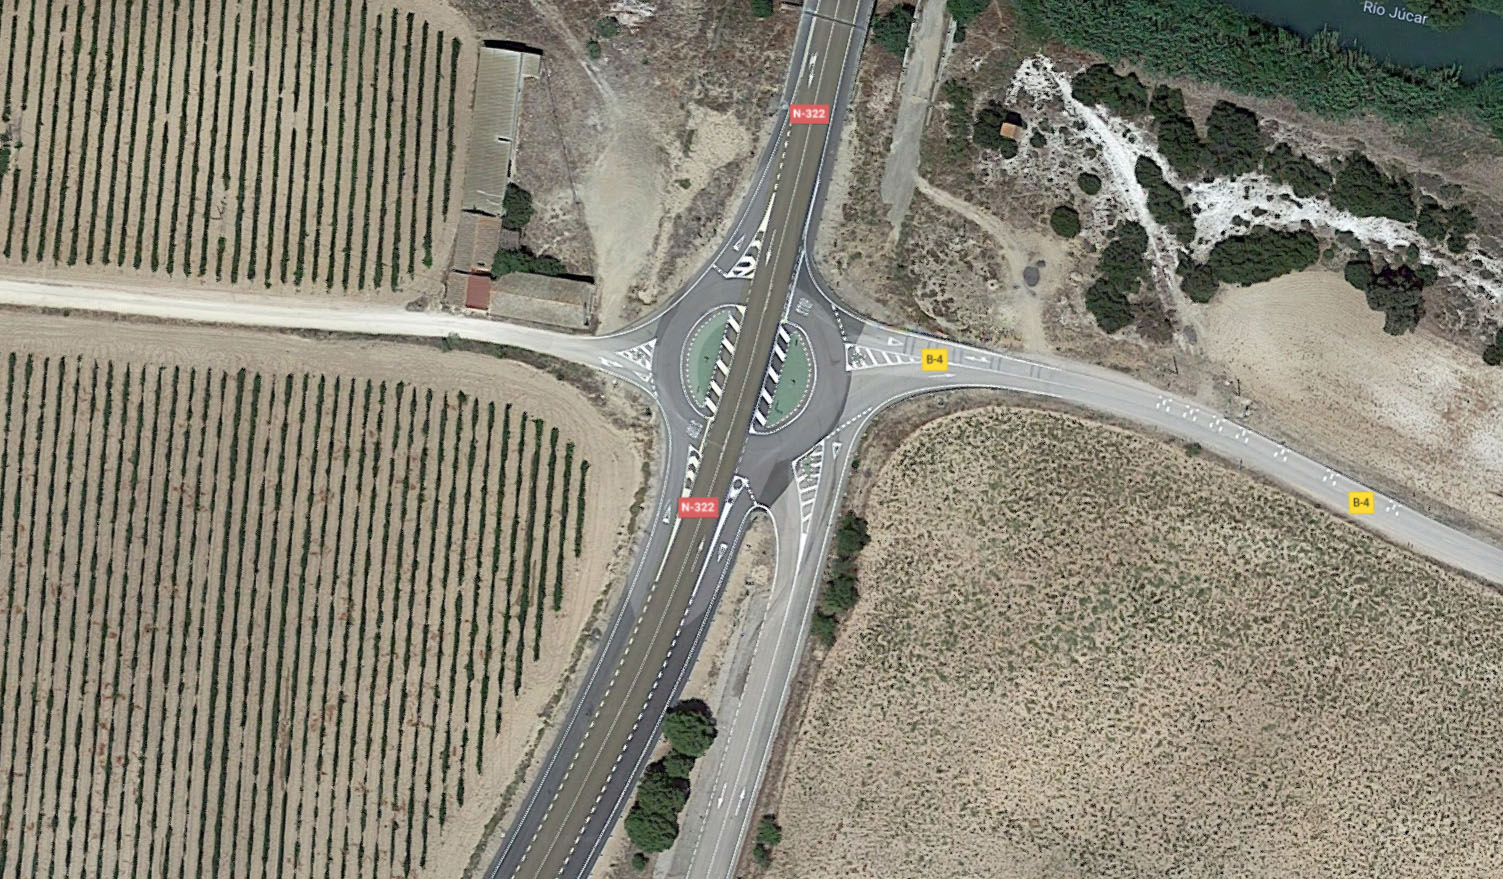 Otras dos personas han resultado heridas en el accidente de tráfico que ha tenido lugar cerca de Albacete.